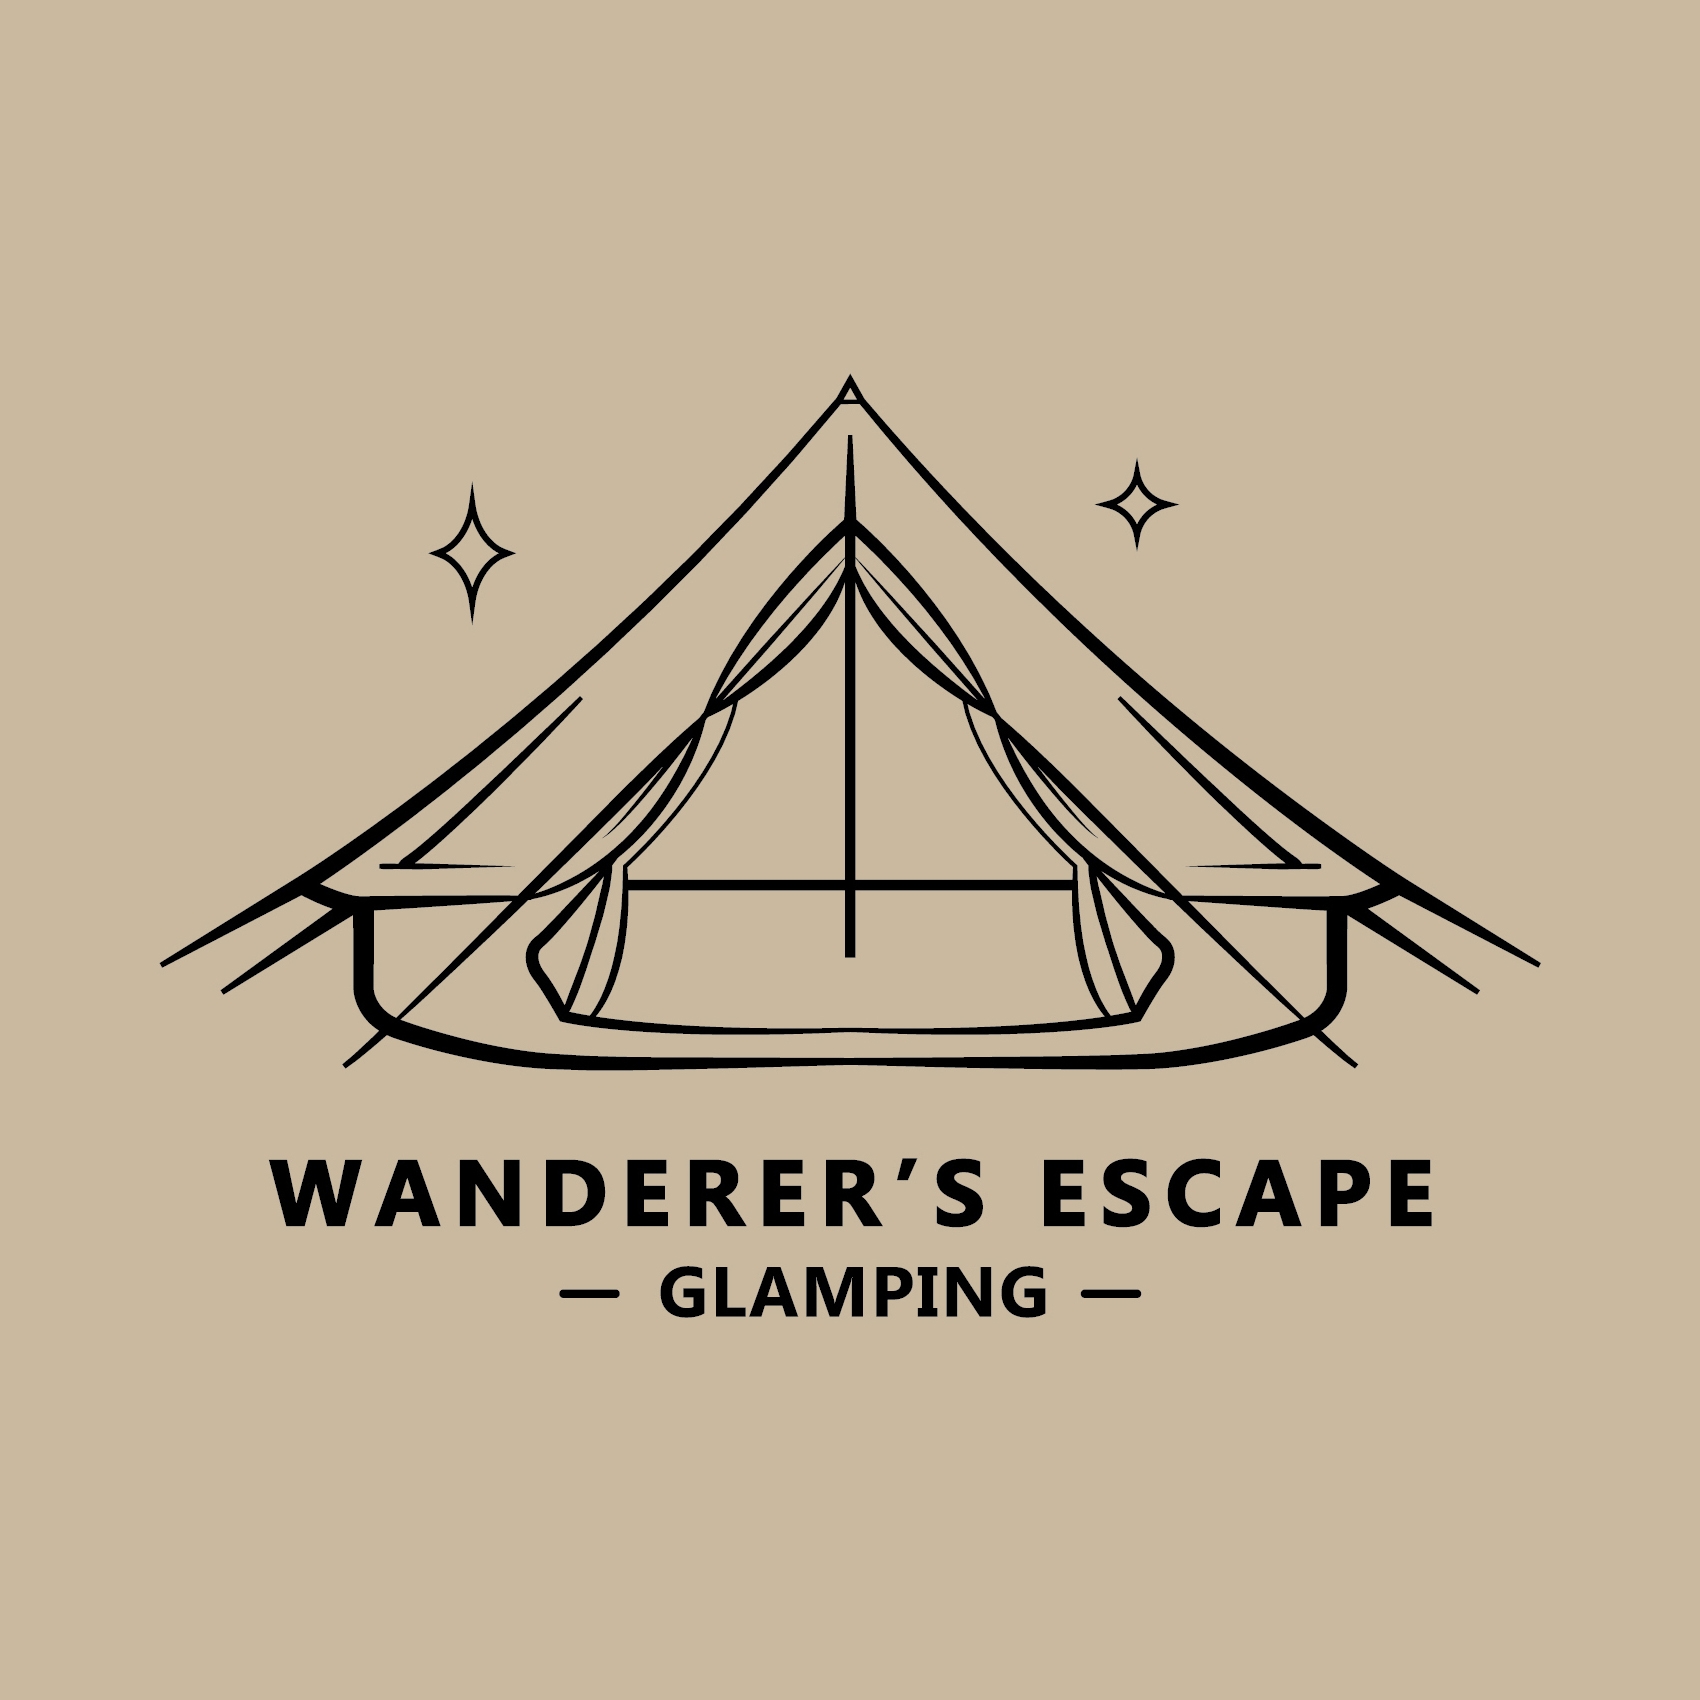 Wanderer’s Escape